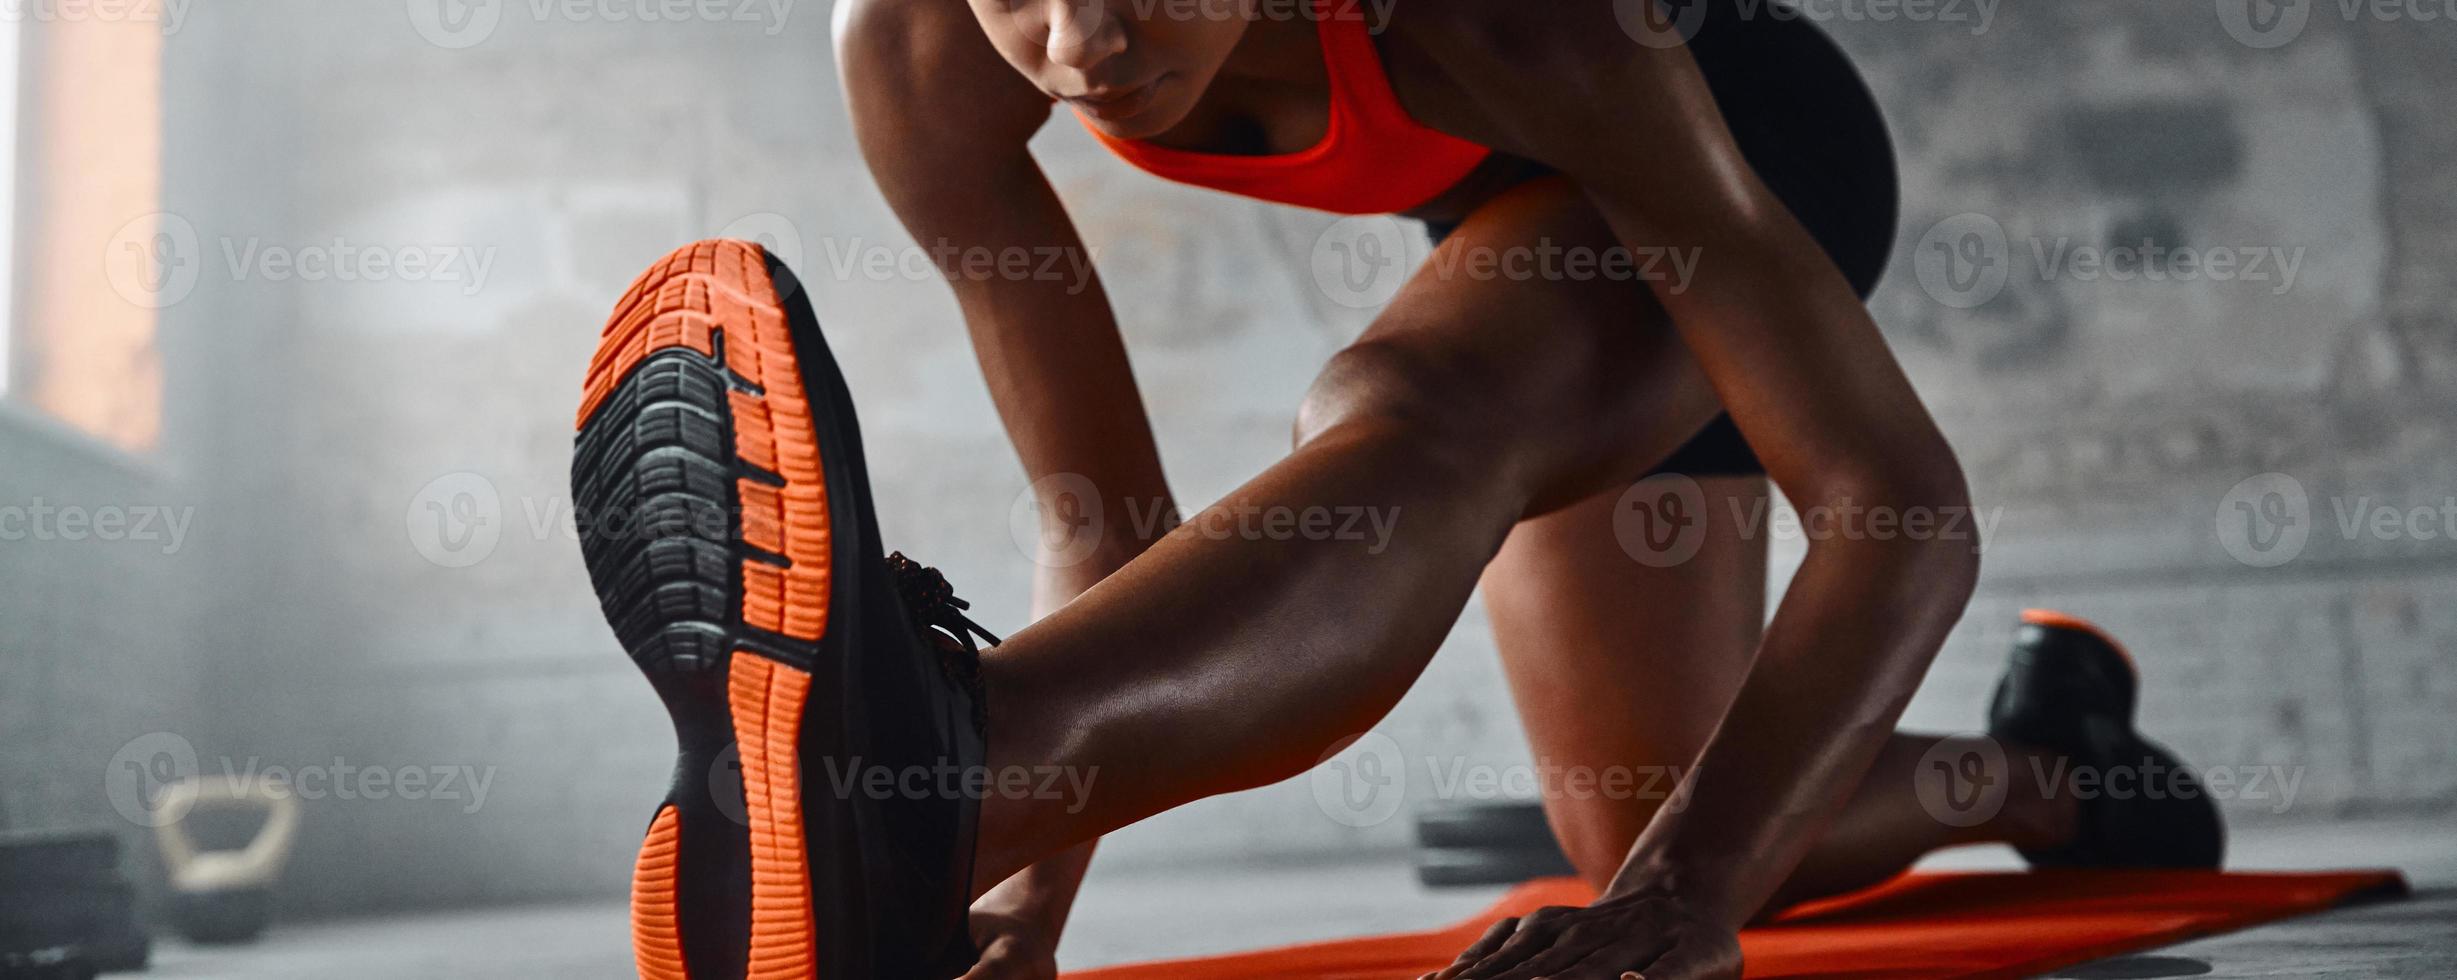 close-up van jonge Afrikaanse vrouw die rekoefeningen doet in de sportschool foto